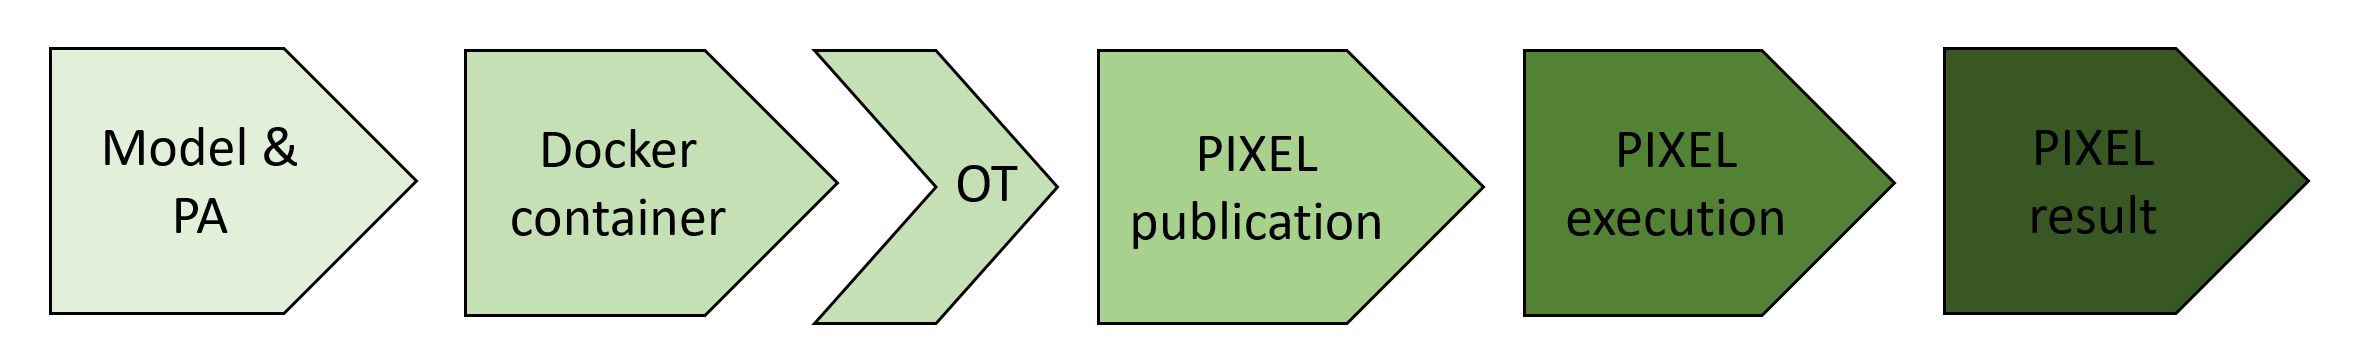 PIXEL model flow